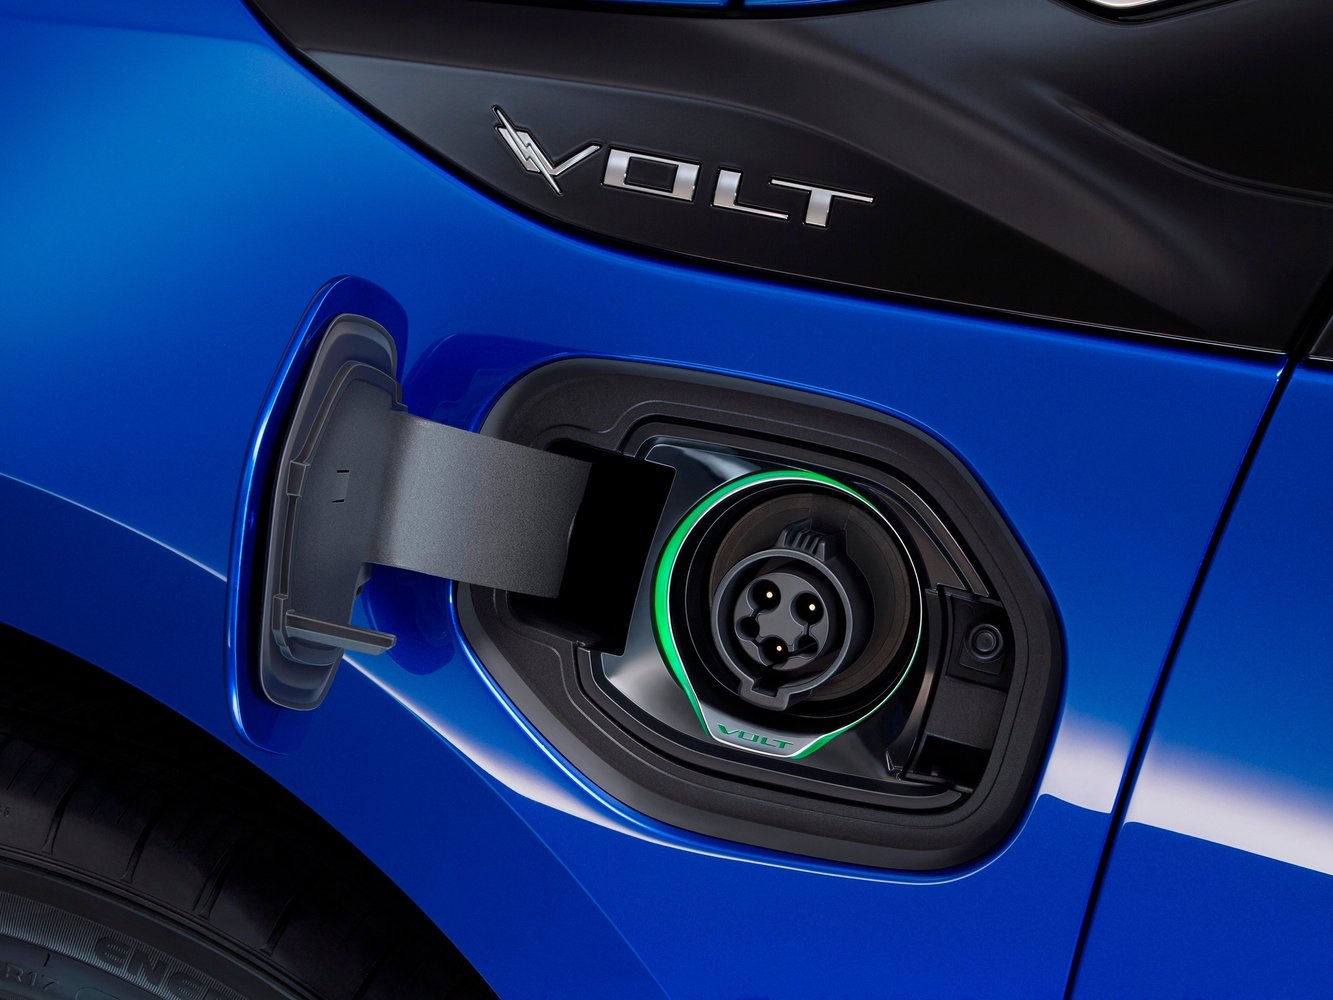 хэтчбек 5 дв. Chevrolet Volt 2015 - 2016г выпуска модификация 1.5 CVT (101 л.с.)